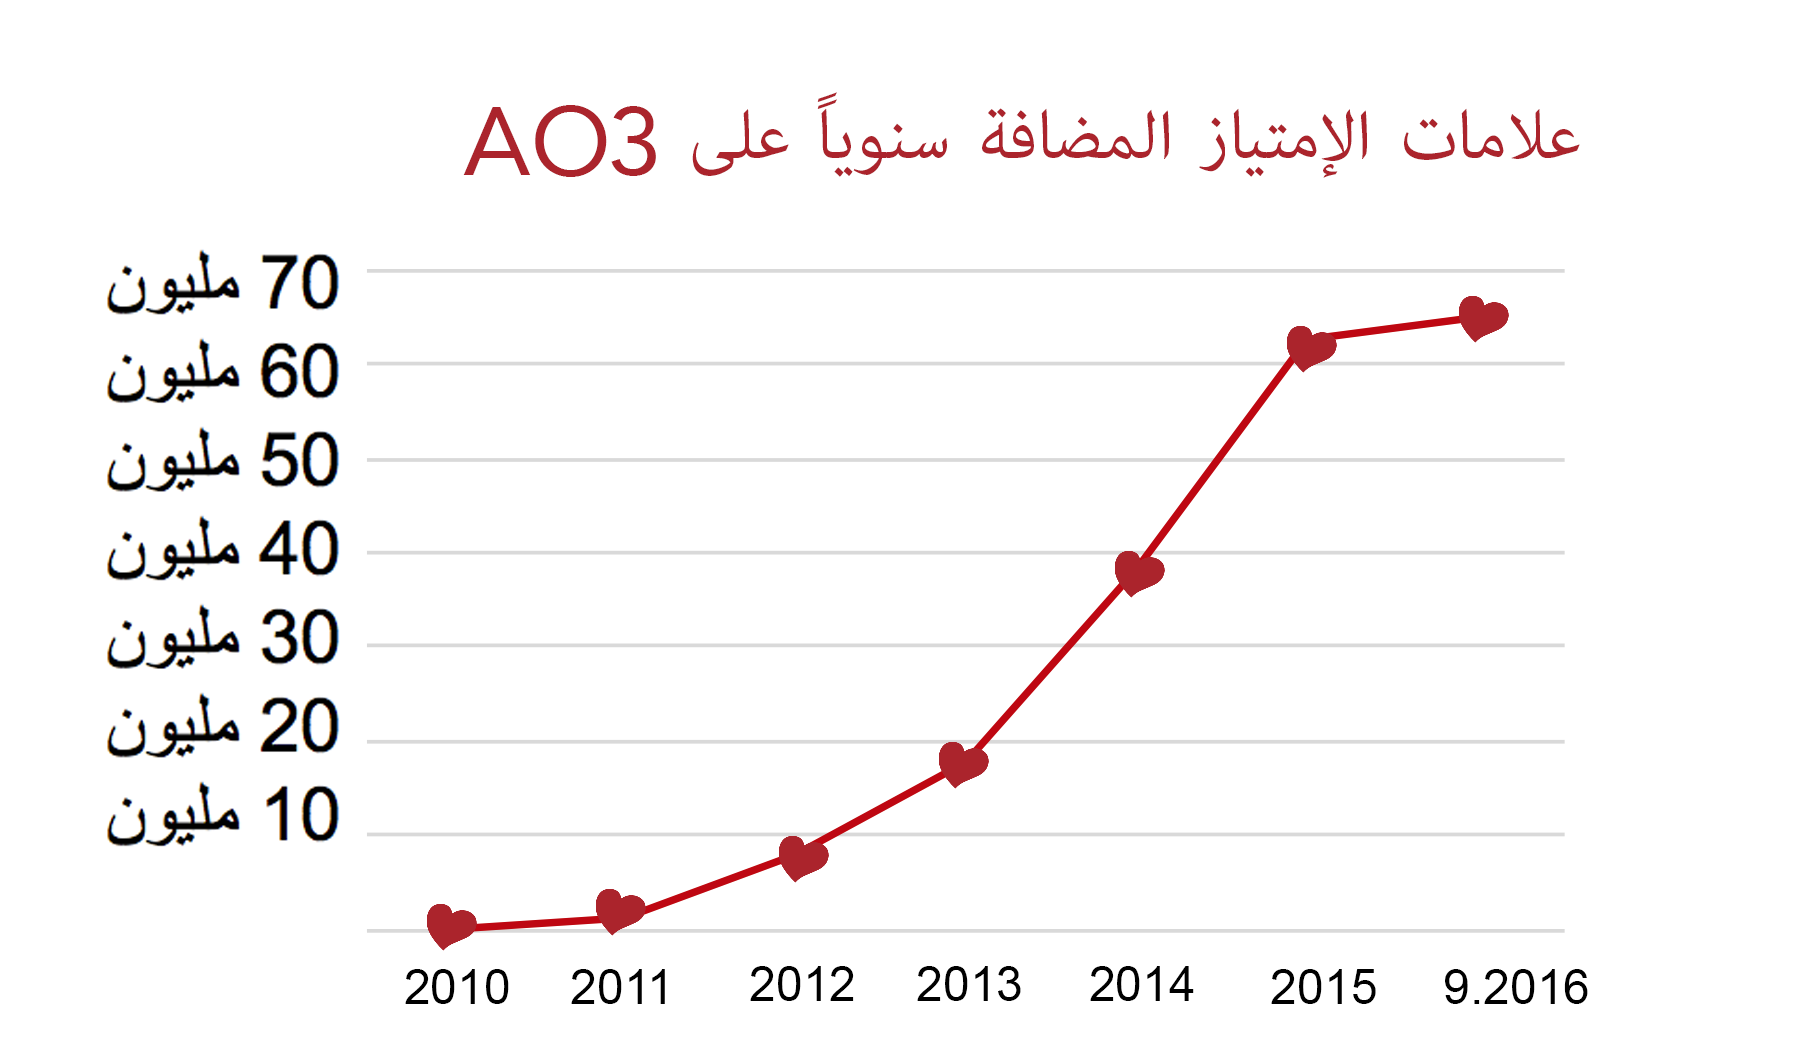 الرسم البياني لمعدل الزيادة في عدد علامات الإمتياز التي تُمنح  للأعمال على AO3، من صفر في عام 2010 إلى أكثر من 60 مليوناً في سبتمبر 2016.